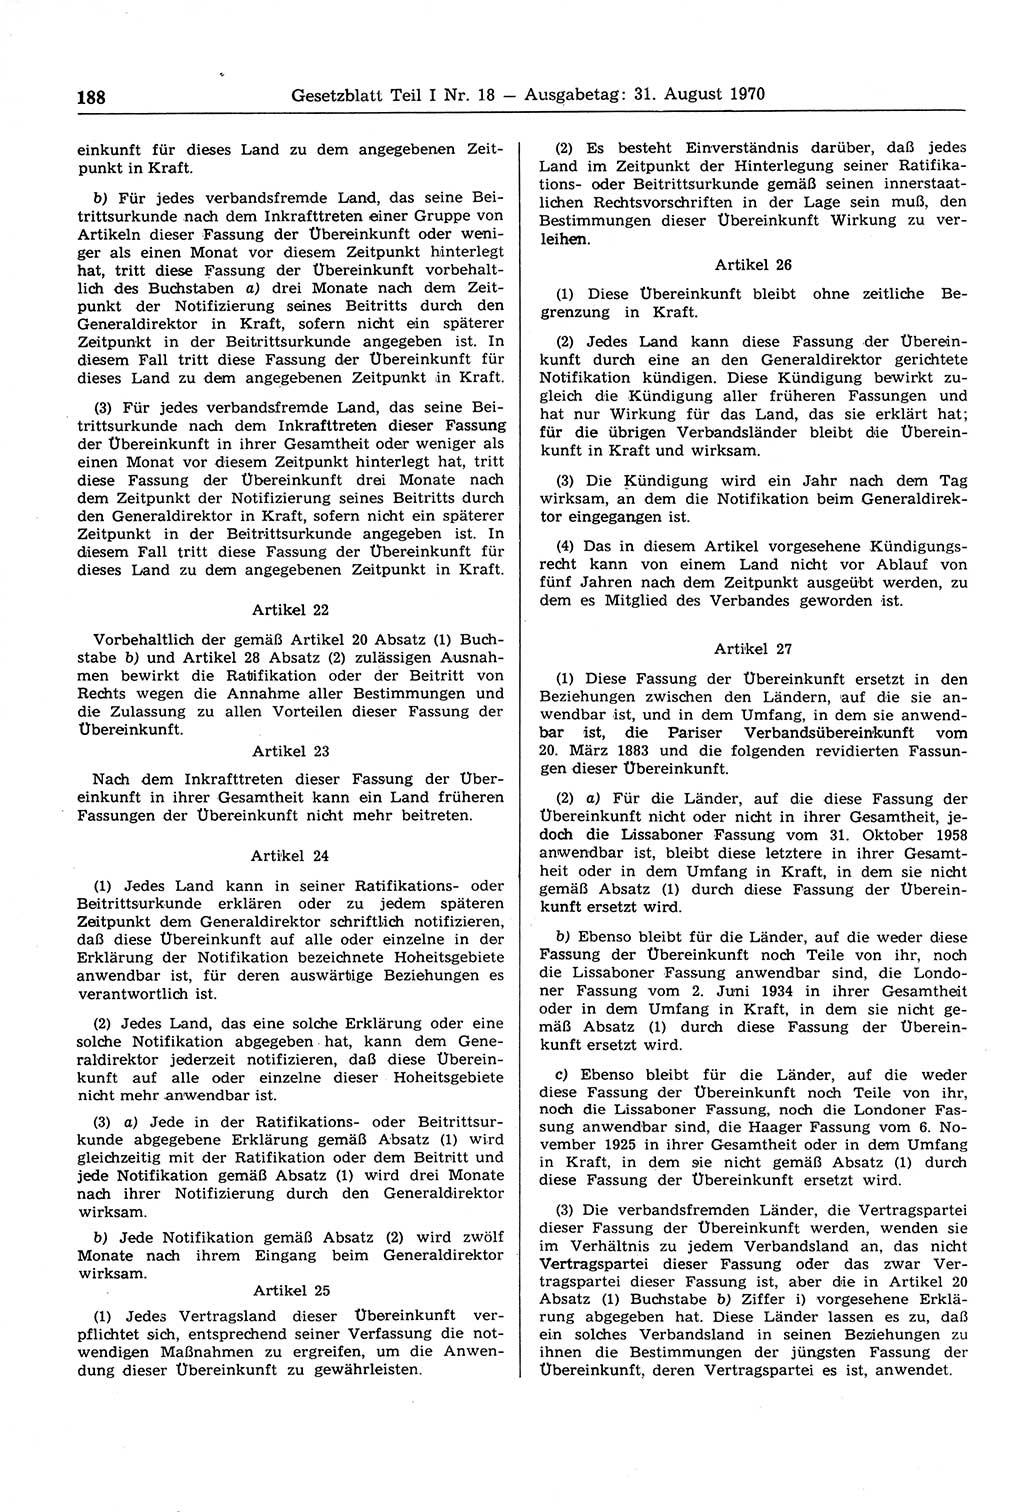 Gesetzblatt (GBl.) der Deutschen Demokratischen Republik (DDR) Teil Ⅰ 1970, Seite 188 (GBl. DDR Ⅰ 1970, S. 188)